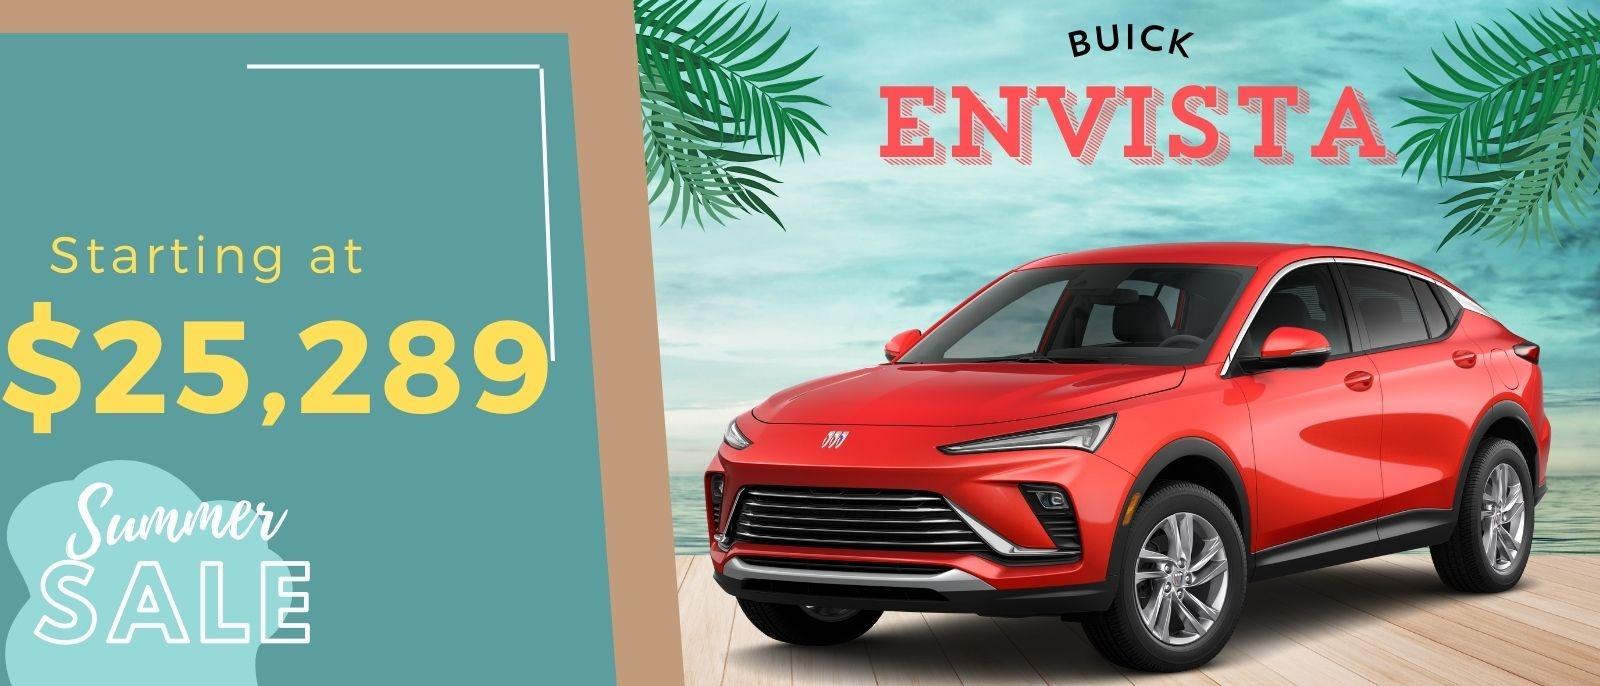 Buick Envista starting at